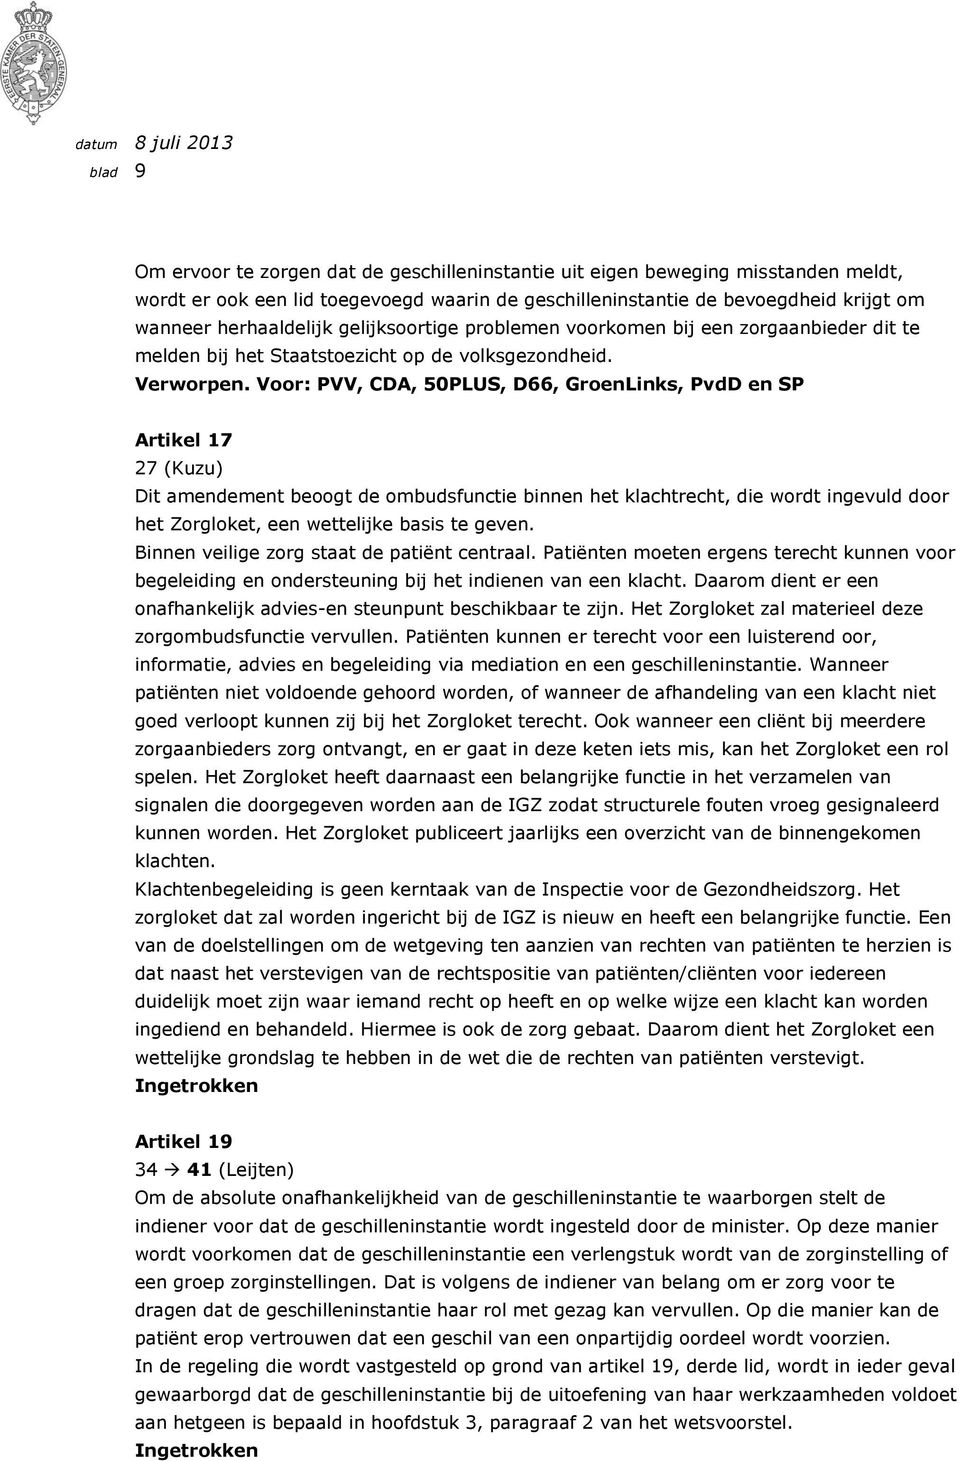 Voor: PVV, CDA, 50PLUS, D66, GroenLinks, PvdD en SP Artikel 17 27 (Kuzu) Dit amendement beoogt de ombudsfunctie binnen het klachtrecht, die wordt ingevuld door het Zorgloket, een wettelijke basis te